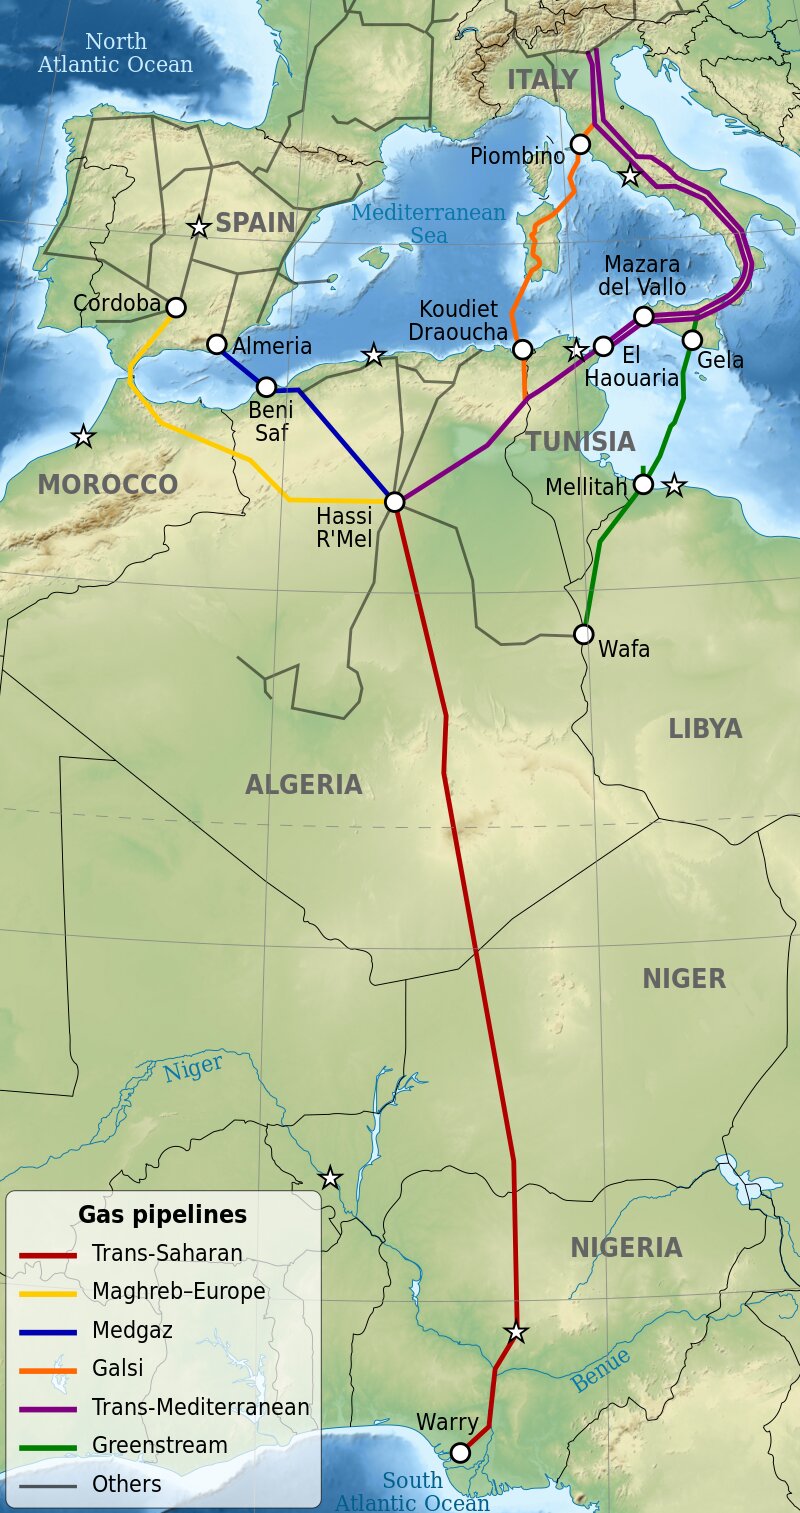 上図のパイプラインのうち、赤のTrans-SaharanとオレンジのGalsiは実現しておらず、黄のMagreb-Europeはアルジェリアとモロッコの国交断絶により2021年より稼動していない。